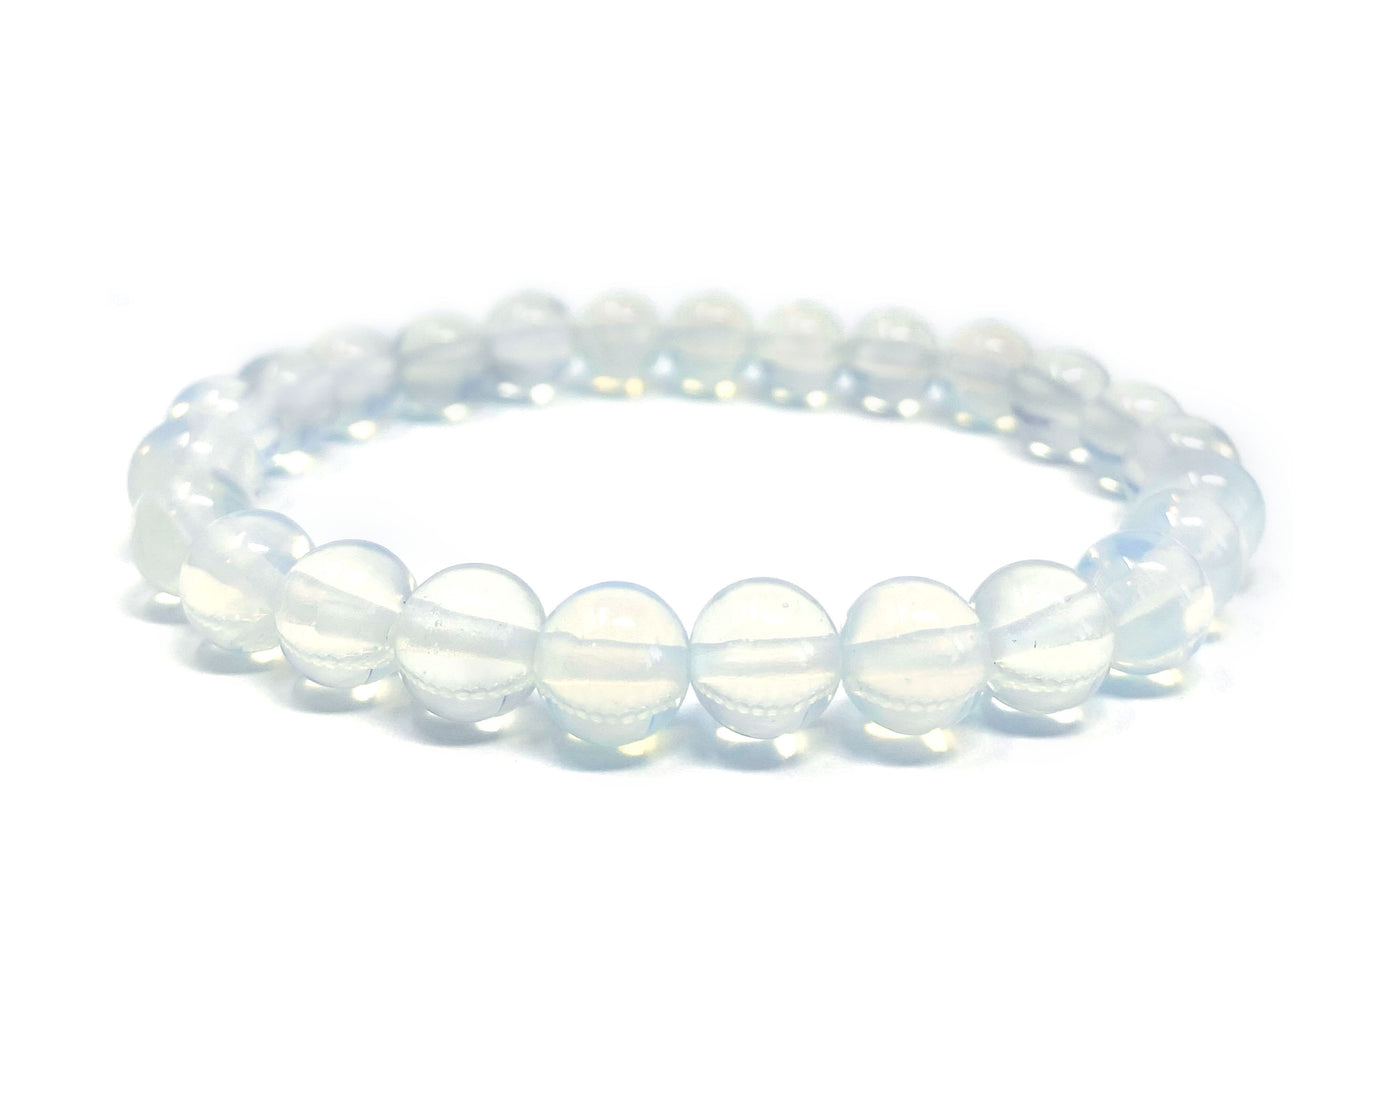 Opalite Crystal Bracelet for Women, Men | Bead Bracelet with Meaning | Healing Gemstone Bracelet | White Crystal Bead Bracelet | Wholesale Dropshipping Crystal Bracelets